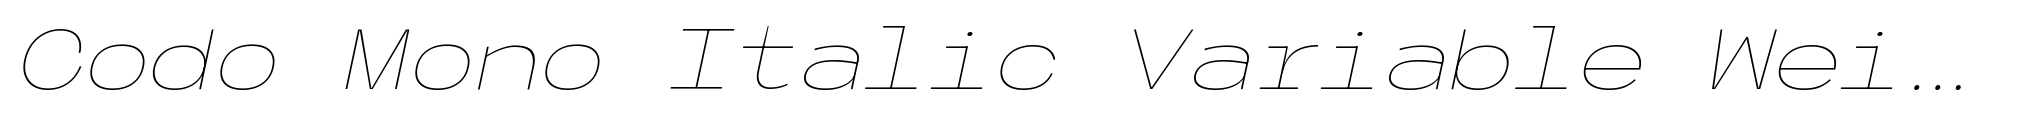 Codo Mono Italic Variable Weight image